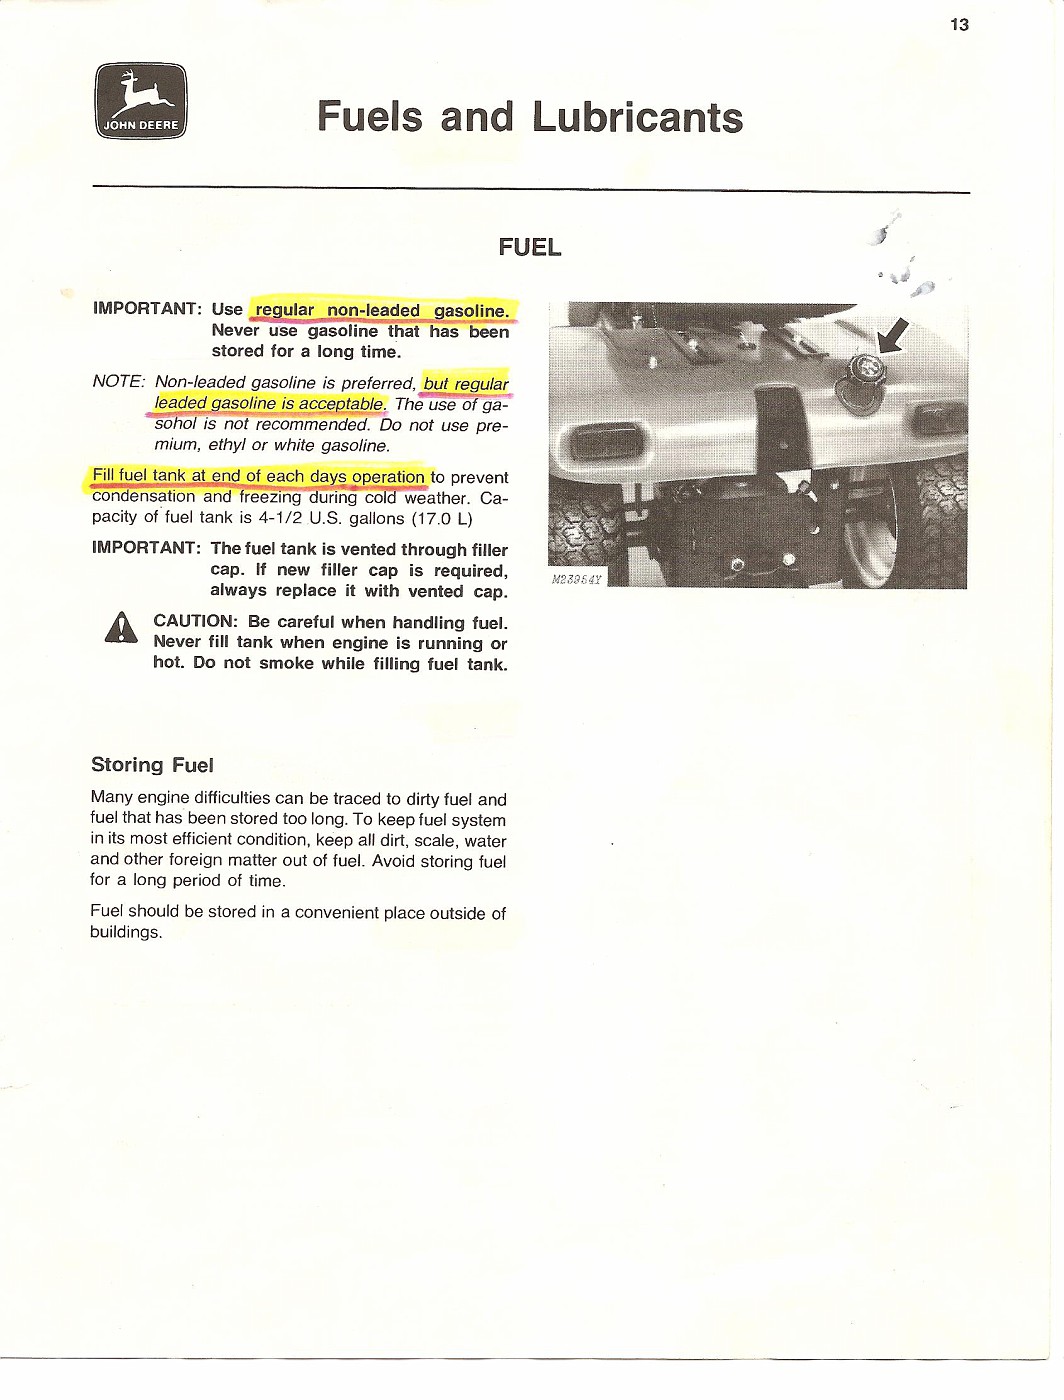 john deere 317 service manual pdf download